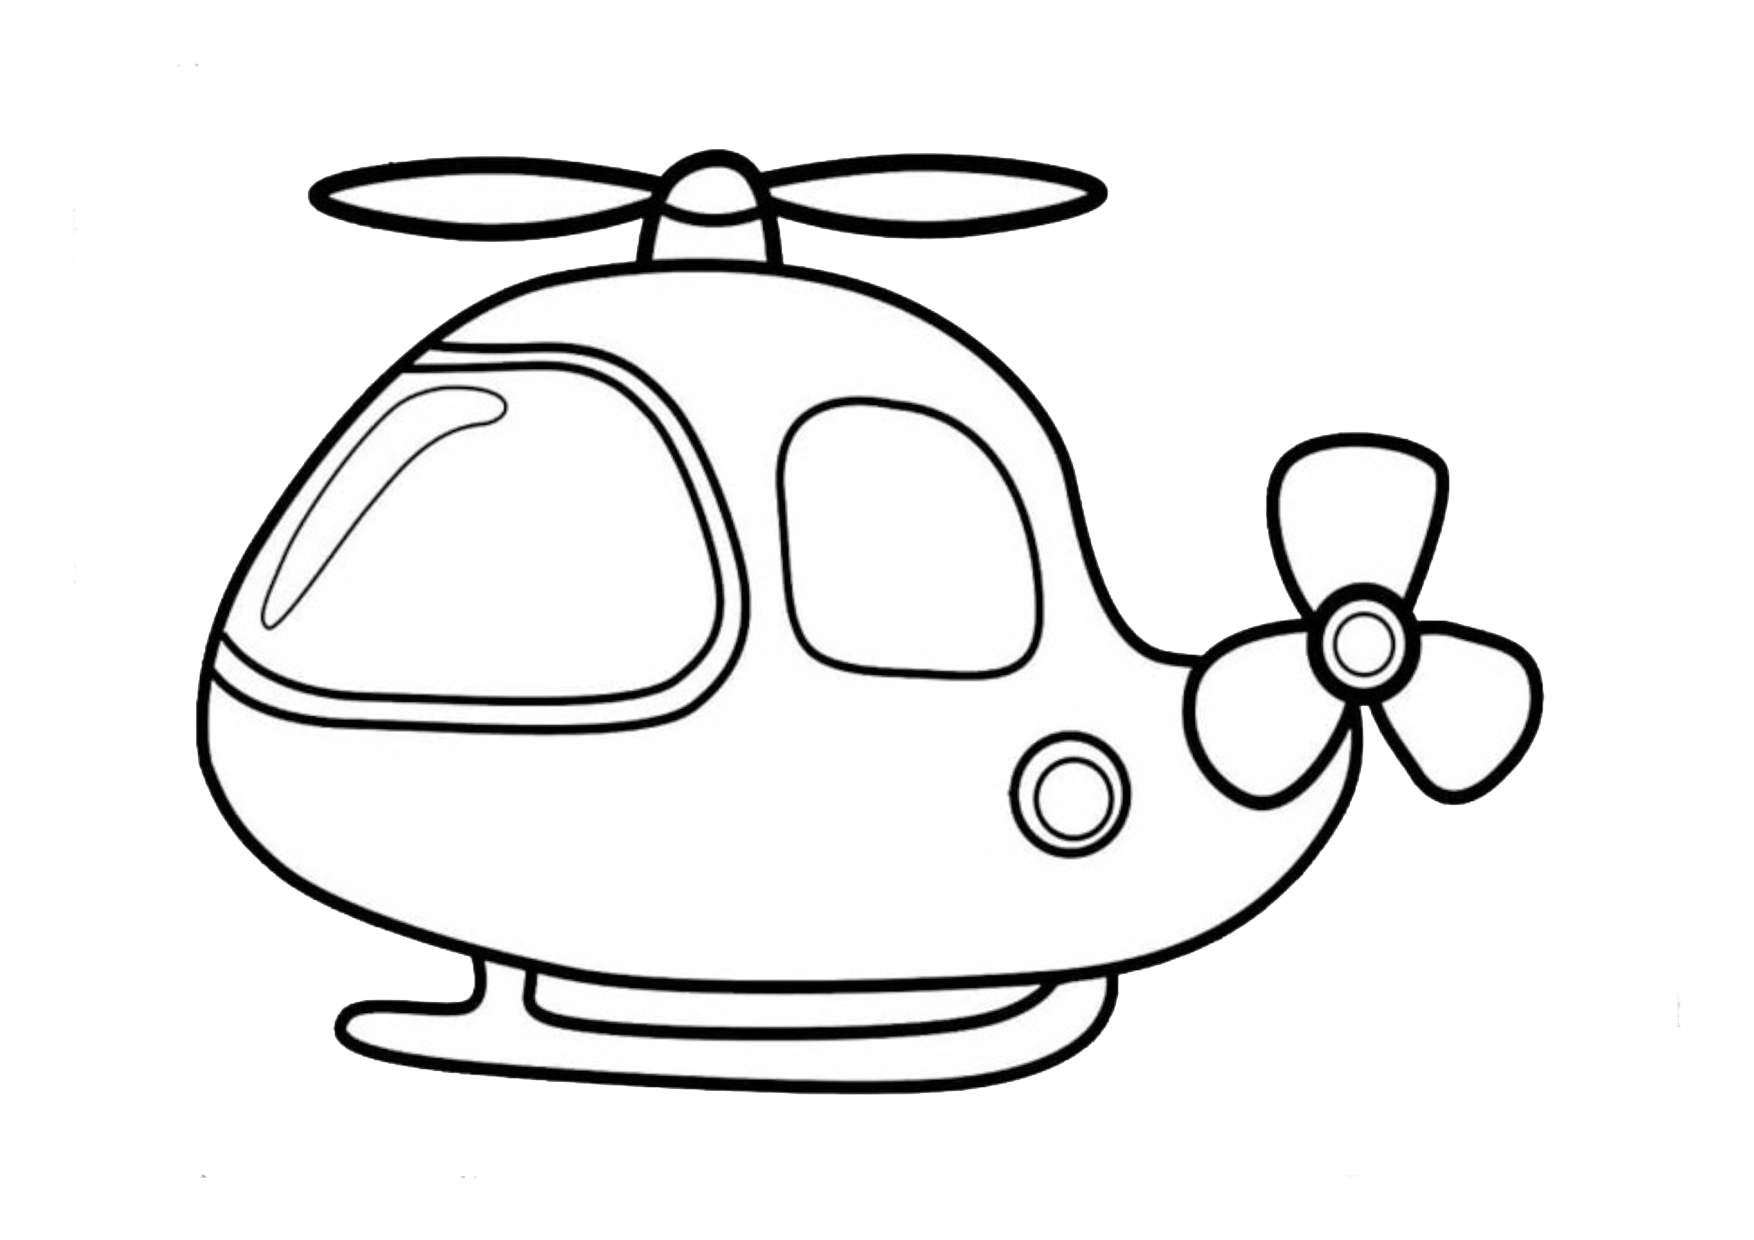 Tô màu máy bay trực thăng nhỏ sẽ giúp cho trẻ em phát triển khả năng tập trung và sáng tạo. Hãy tưởng tượng một thế giới đầy màu sắc và hãy cùng nhau hoàn thành bức tranh với các nét vẽ mượt mà và đầy sức sống!